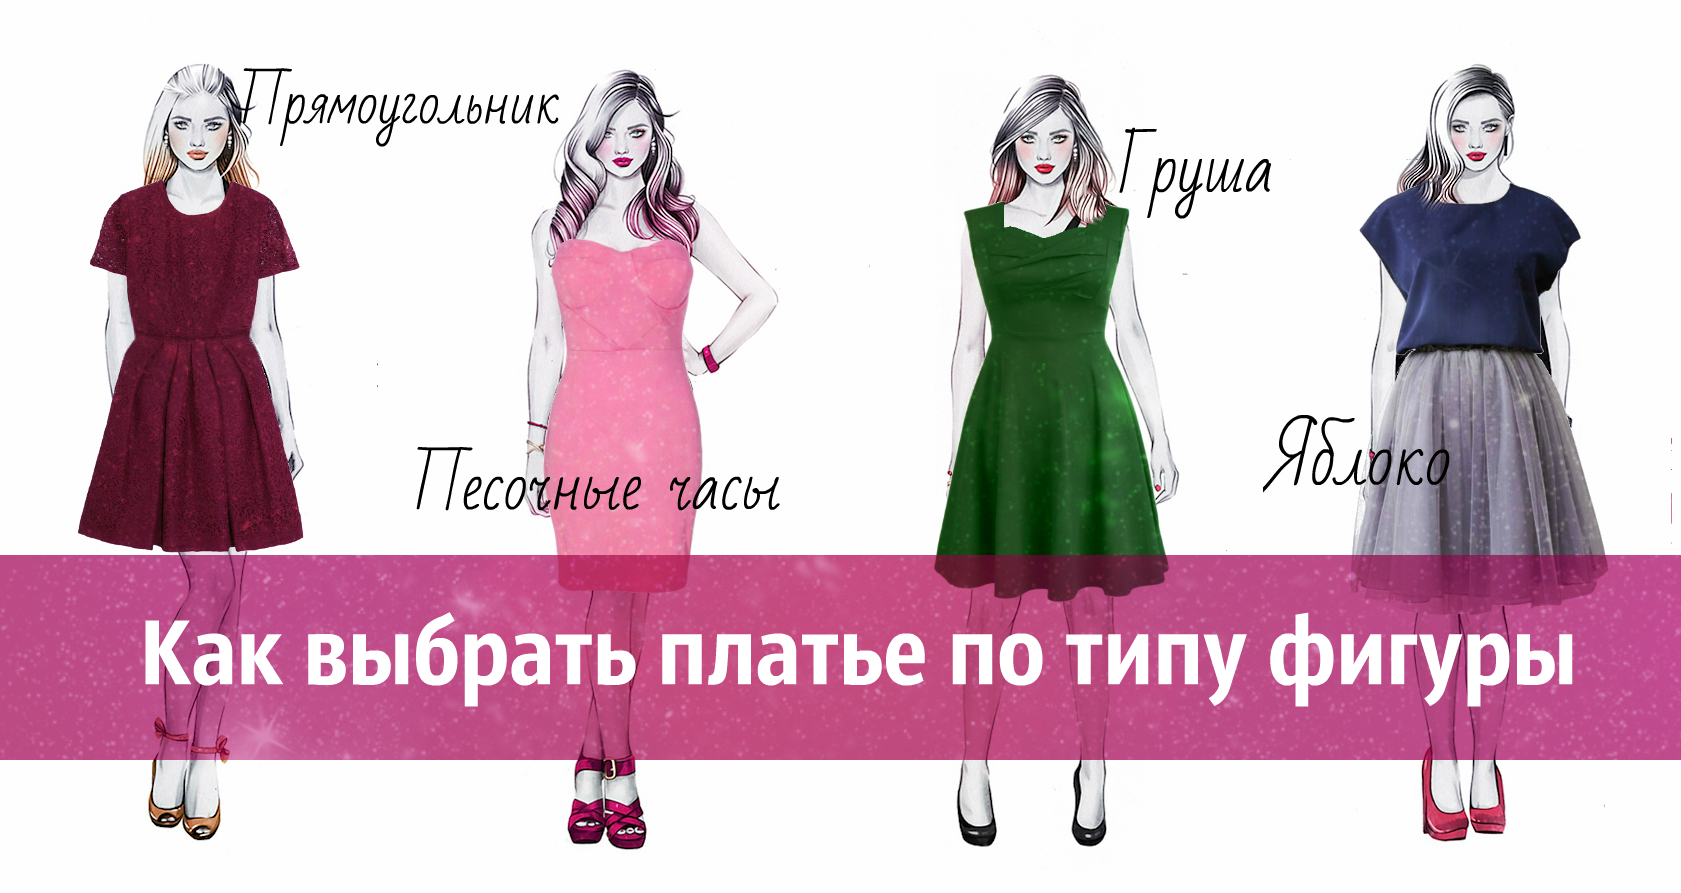 Как подобрать платье по типу фигуры | женский портал malimar.ru